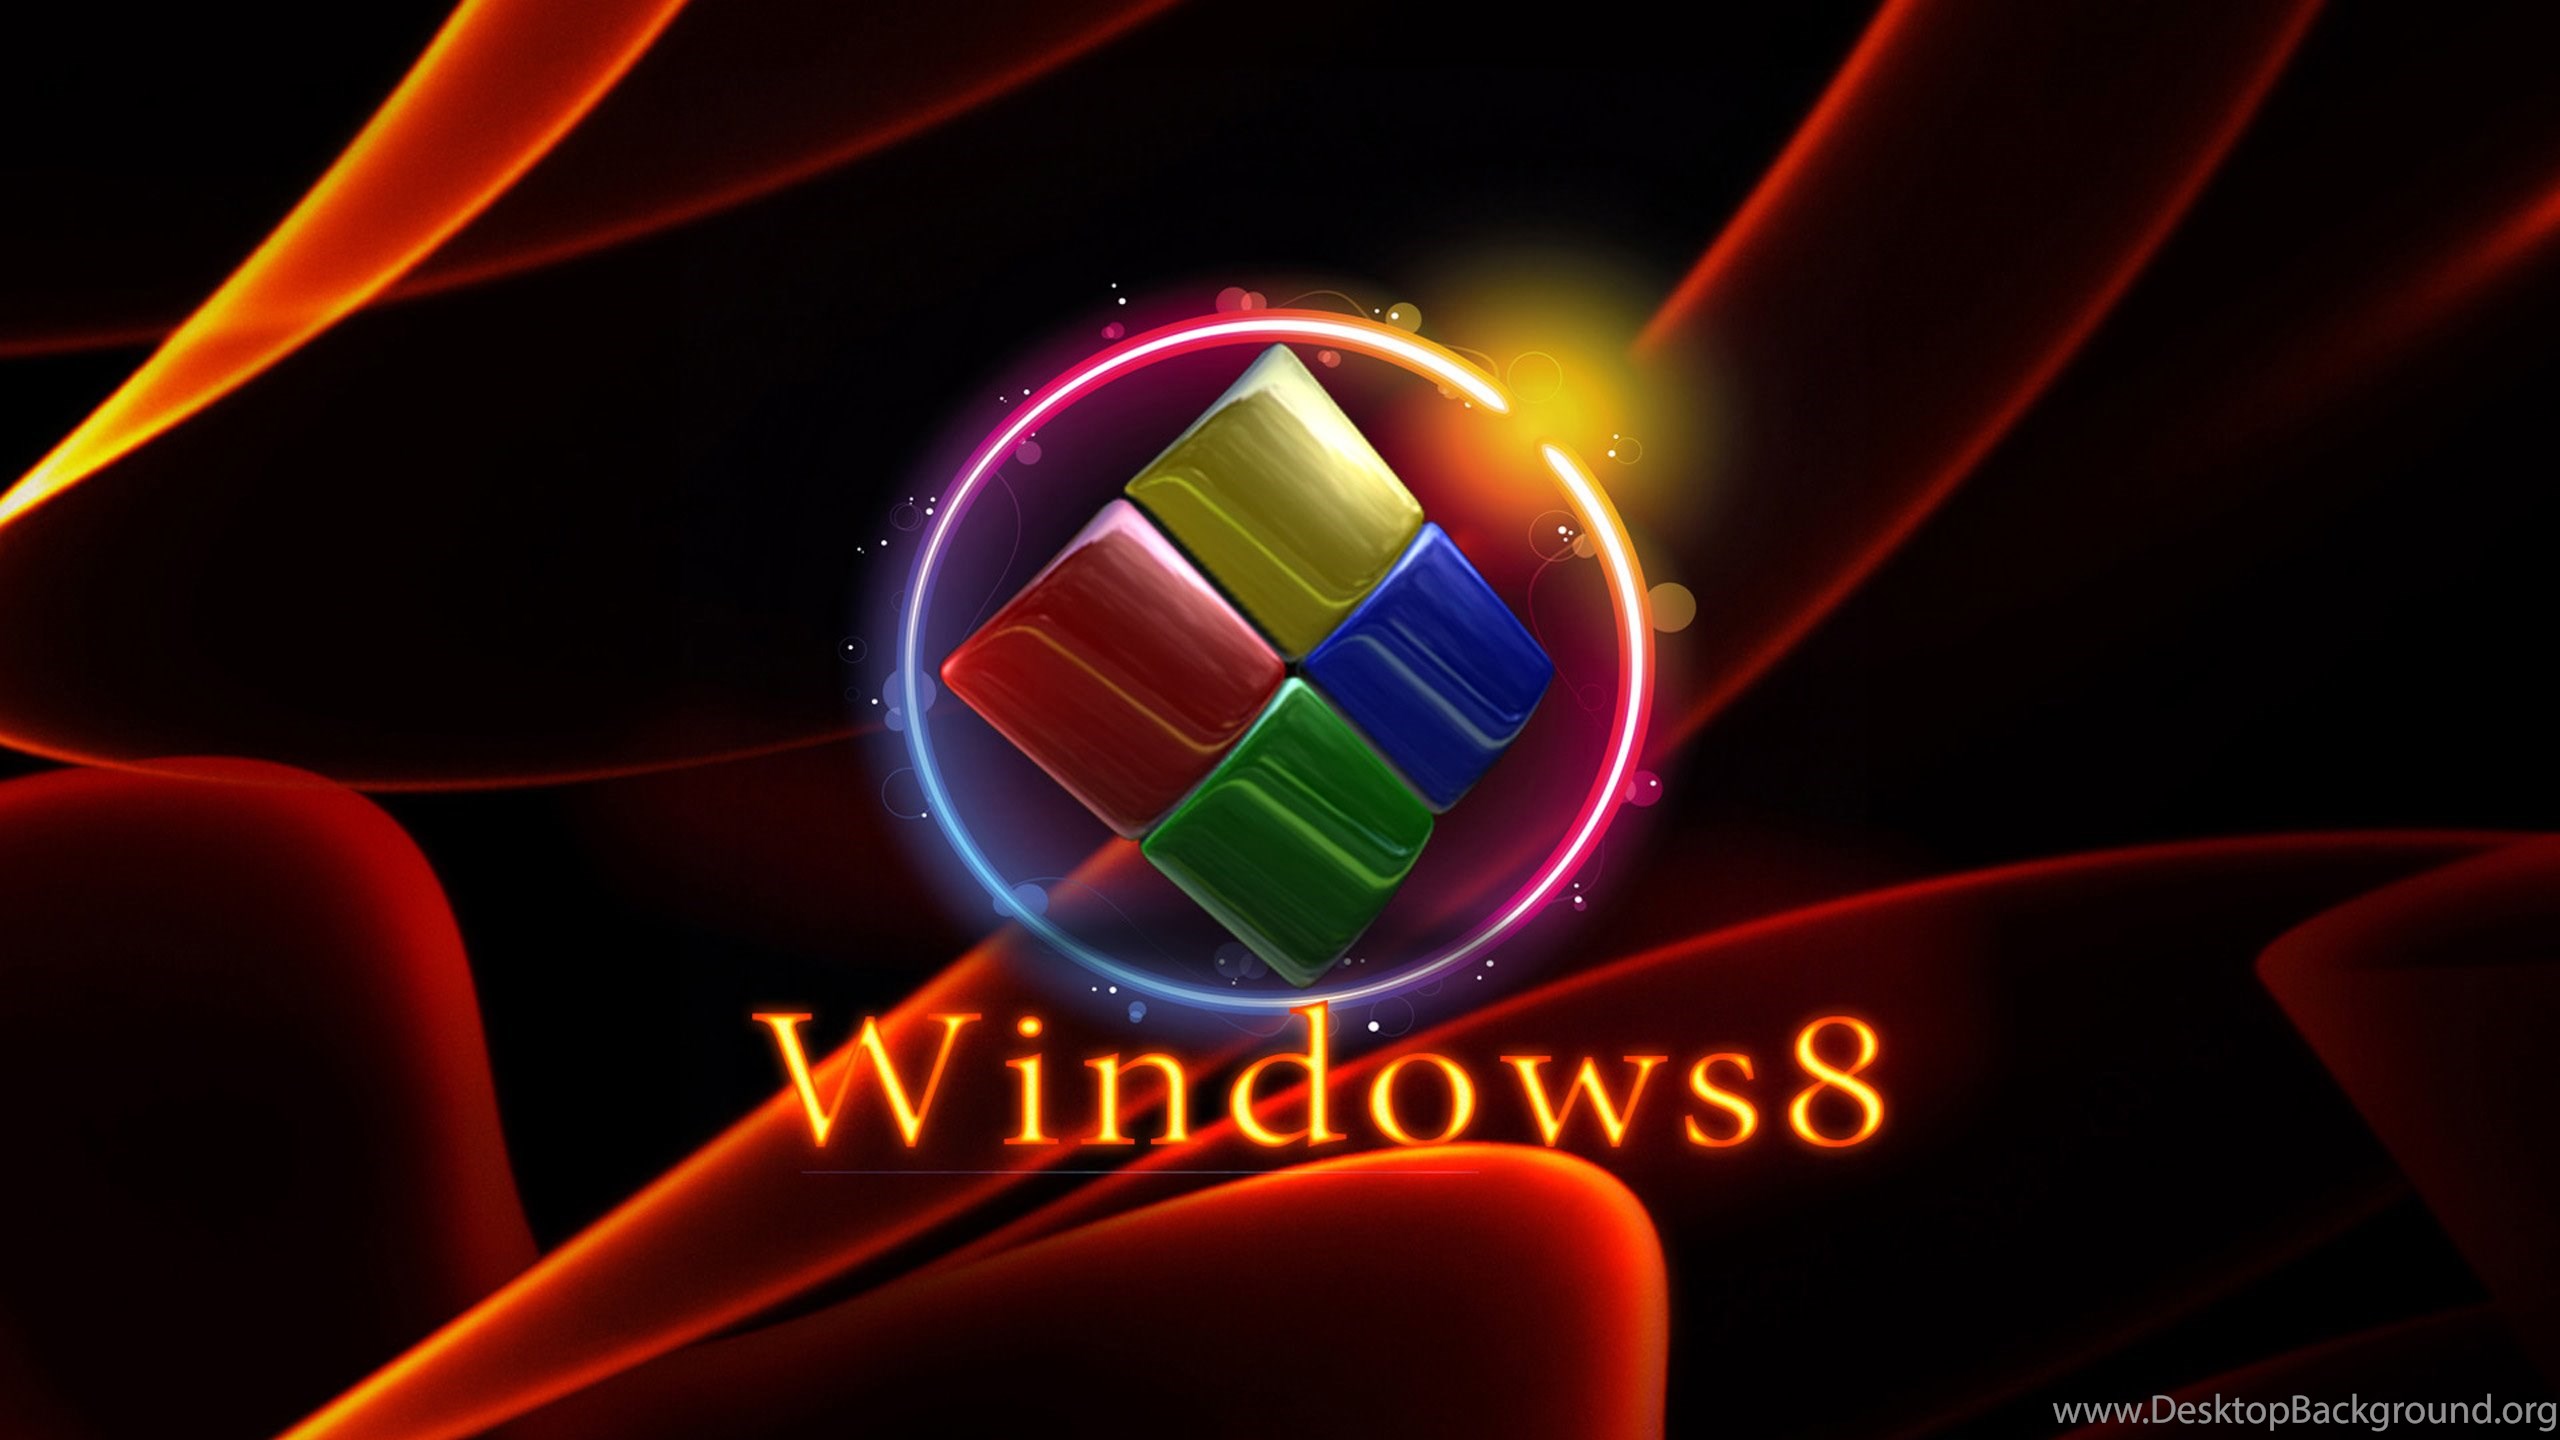 sfondo del desktop di windows hd,leggero,illuminazione ad effetto visivo,disegno grafico,grafica,font